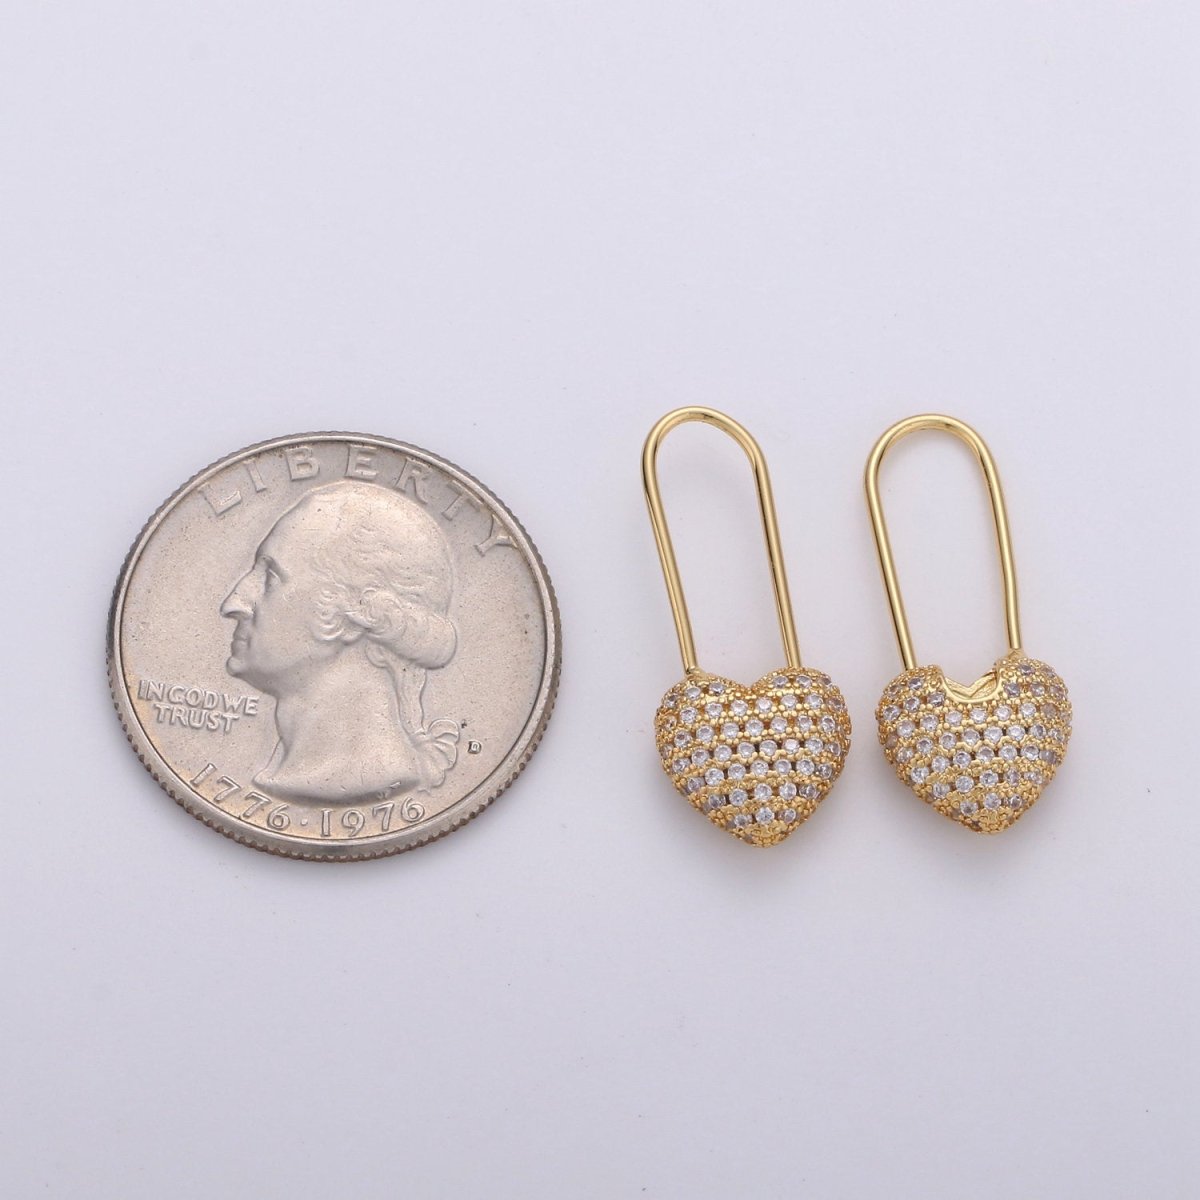 Gold Heart earrings Pin earrings Heart jewelry Unique earrings Unique jewelry Gold earrings Dainty earrings Delicate Earrings K-543 - DLUXCA